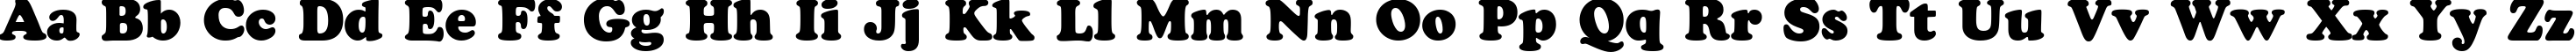 Пример написания английского алфавита шрифтом a_CooperBlack